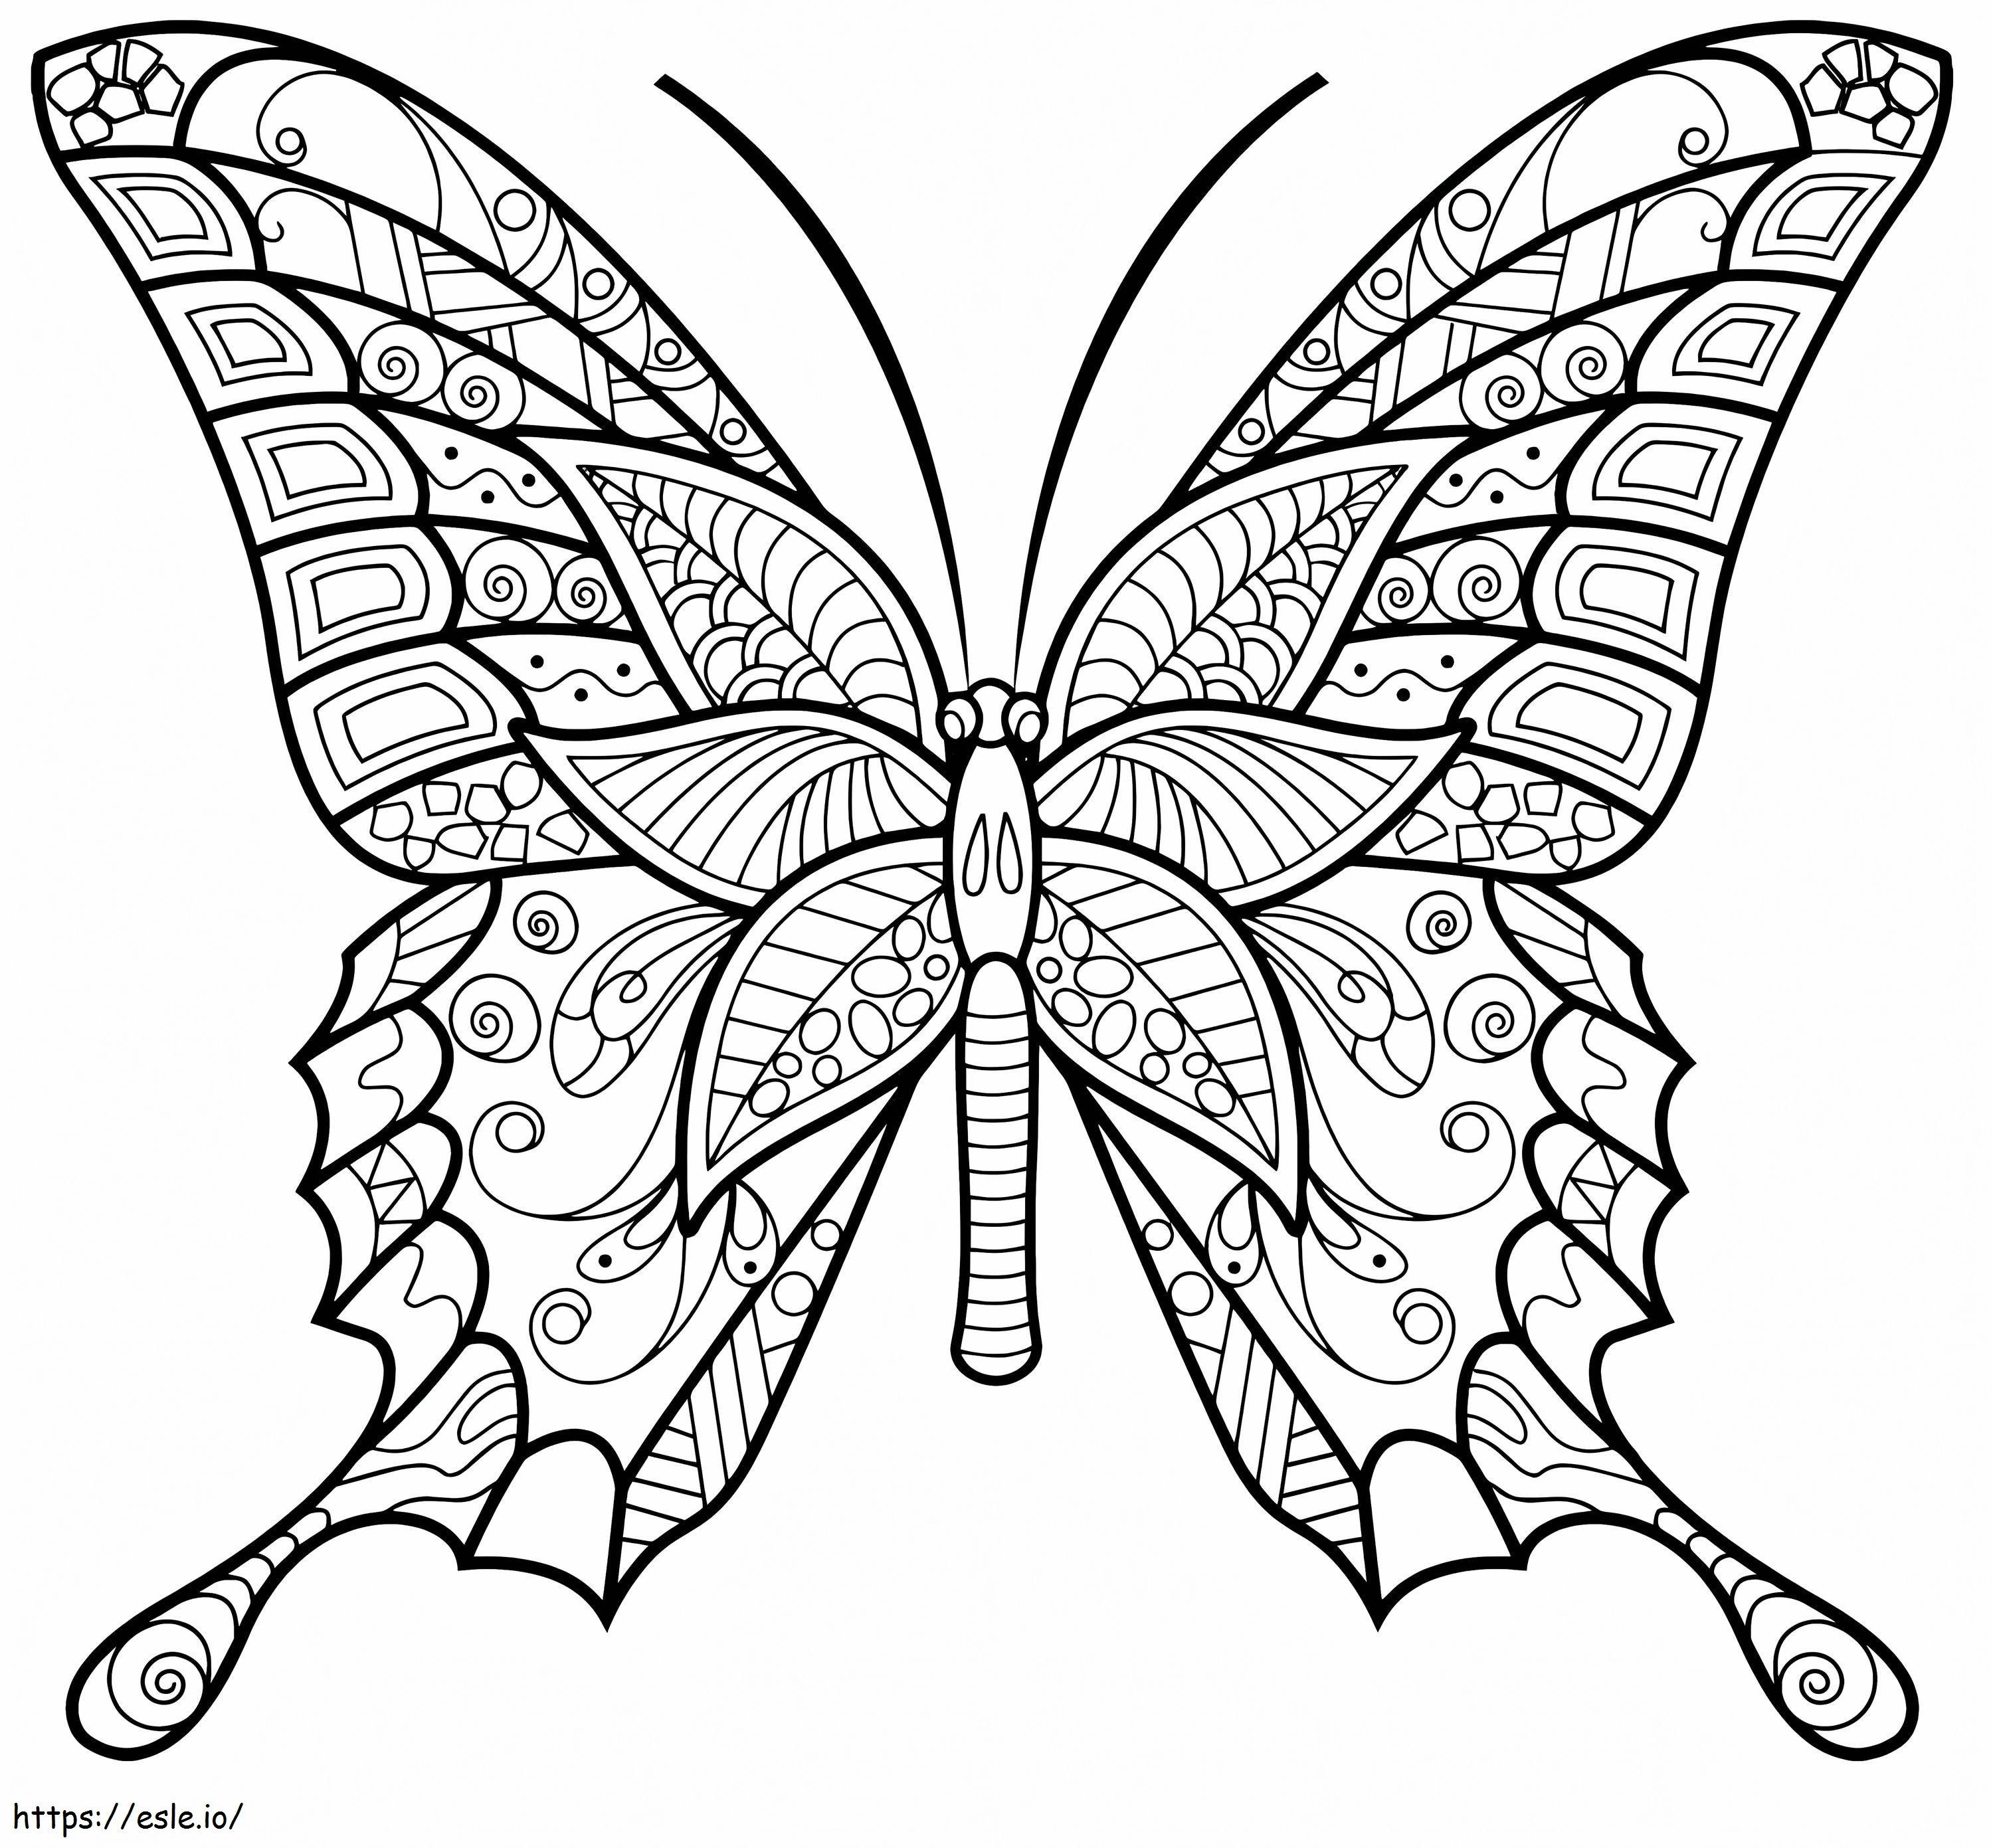 Szép minták a pillangó rovarokról 3 kifestő